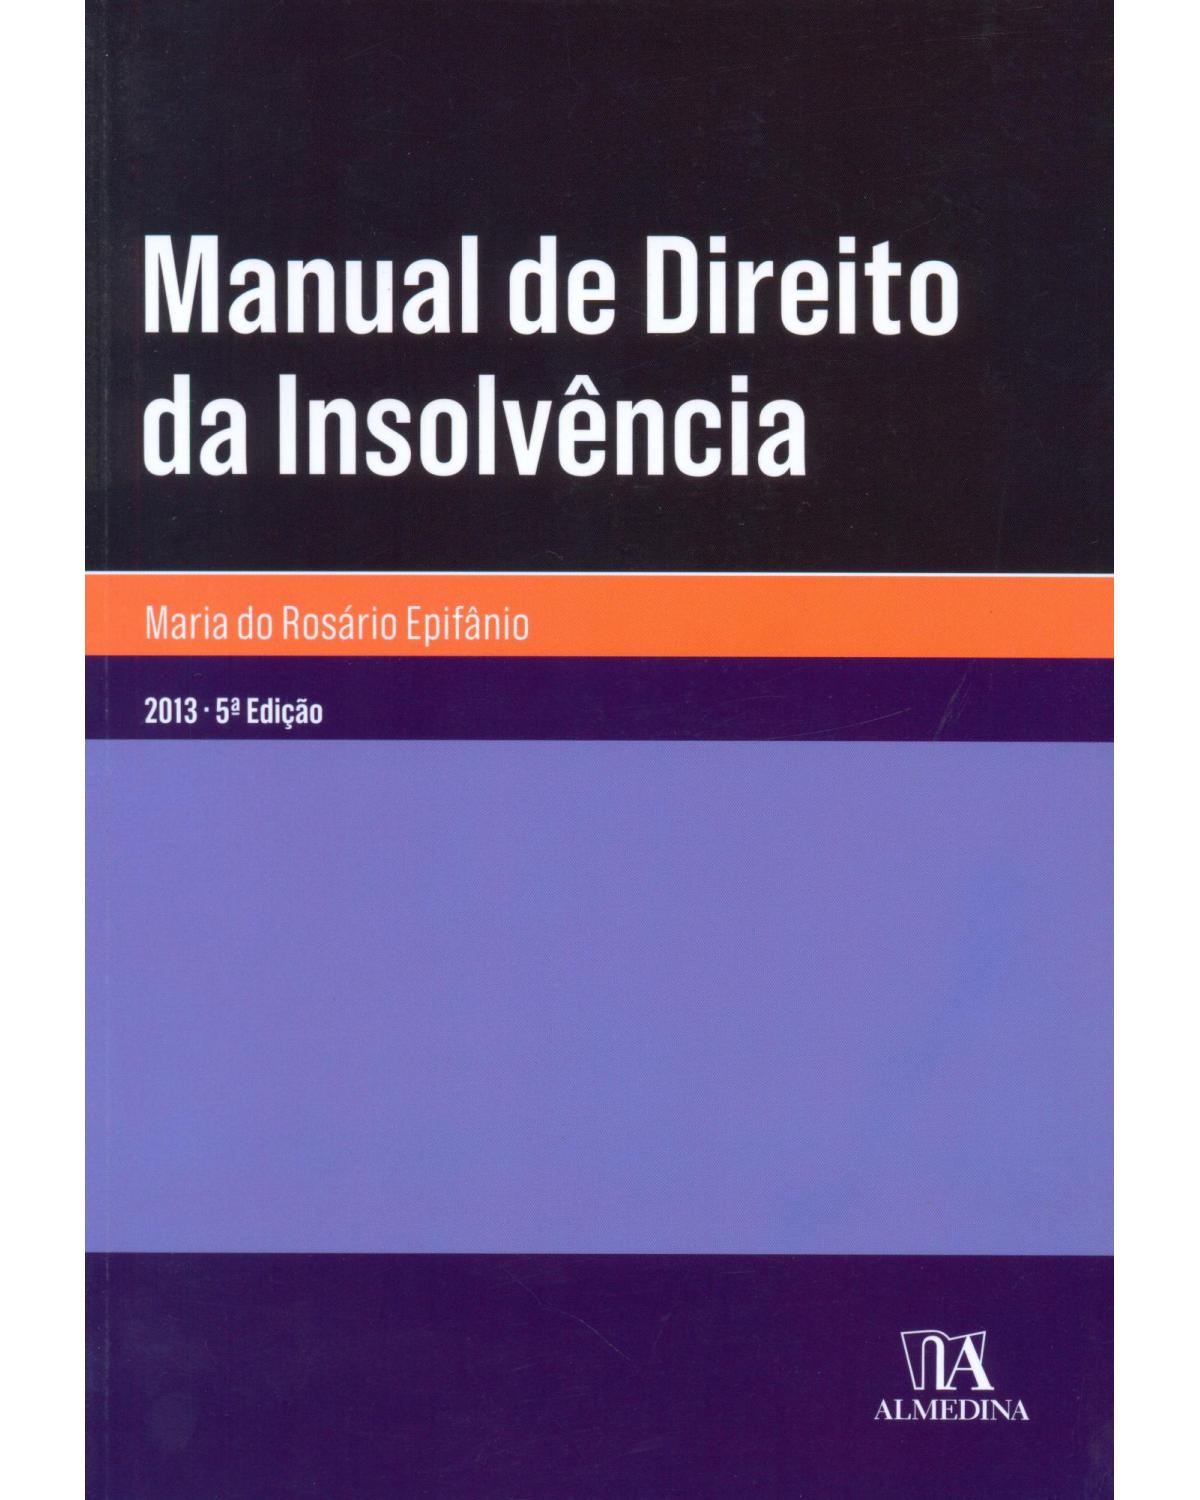 Manual de direito da insolvência - 5ª Edição | 2013